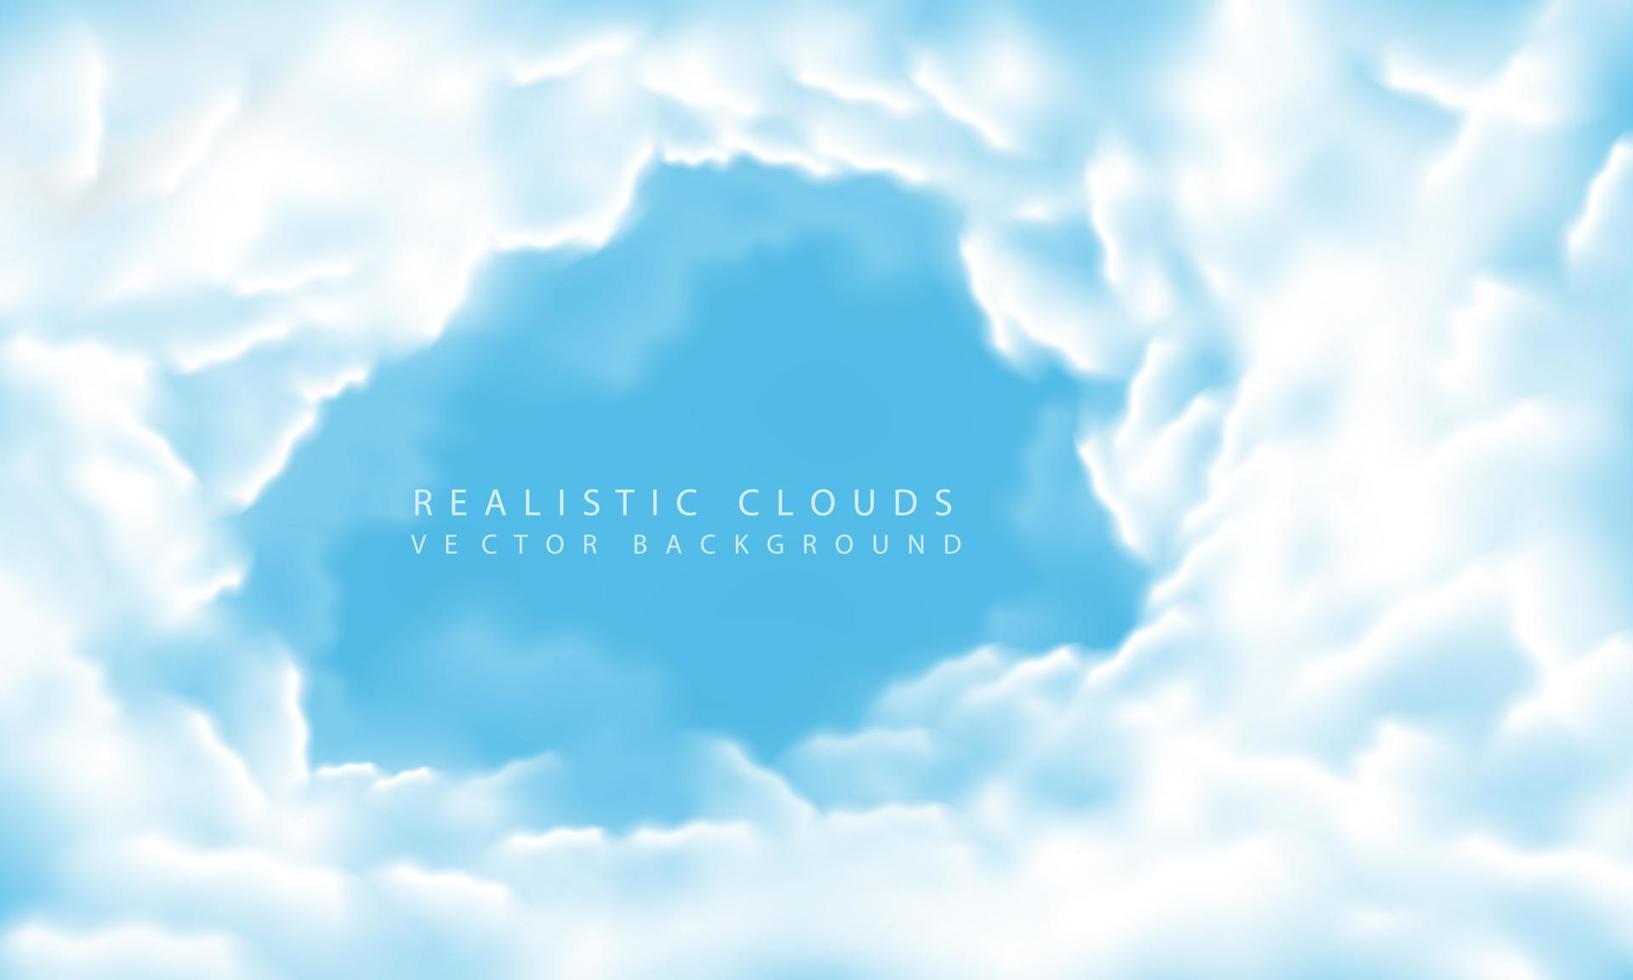 fumaça de neblina de nuvem branca realista no vetor de fundo de espaço em branco do céu azul